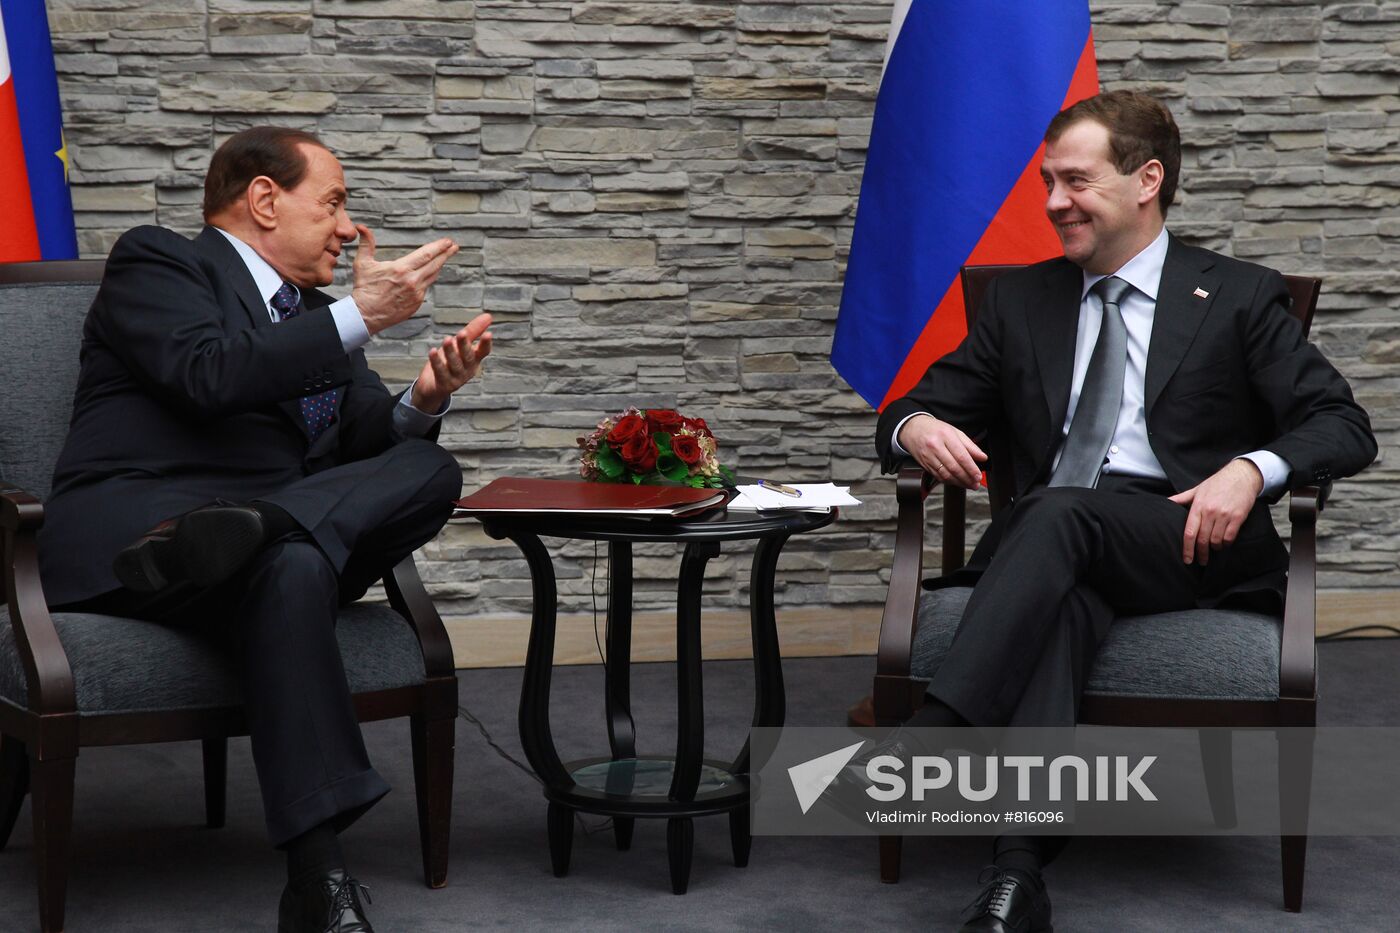 Medvedev, Berlusconi in Krasnaya Polyana